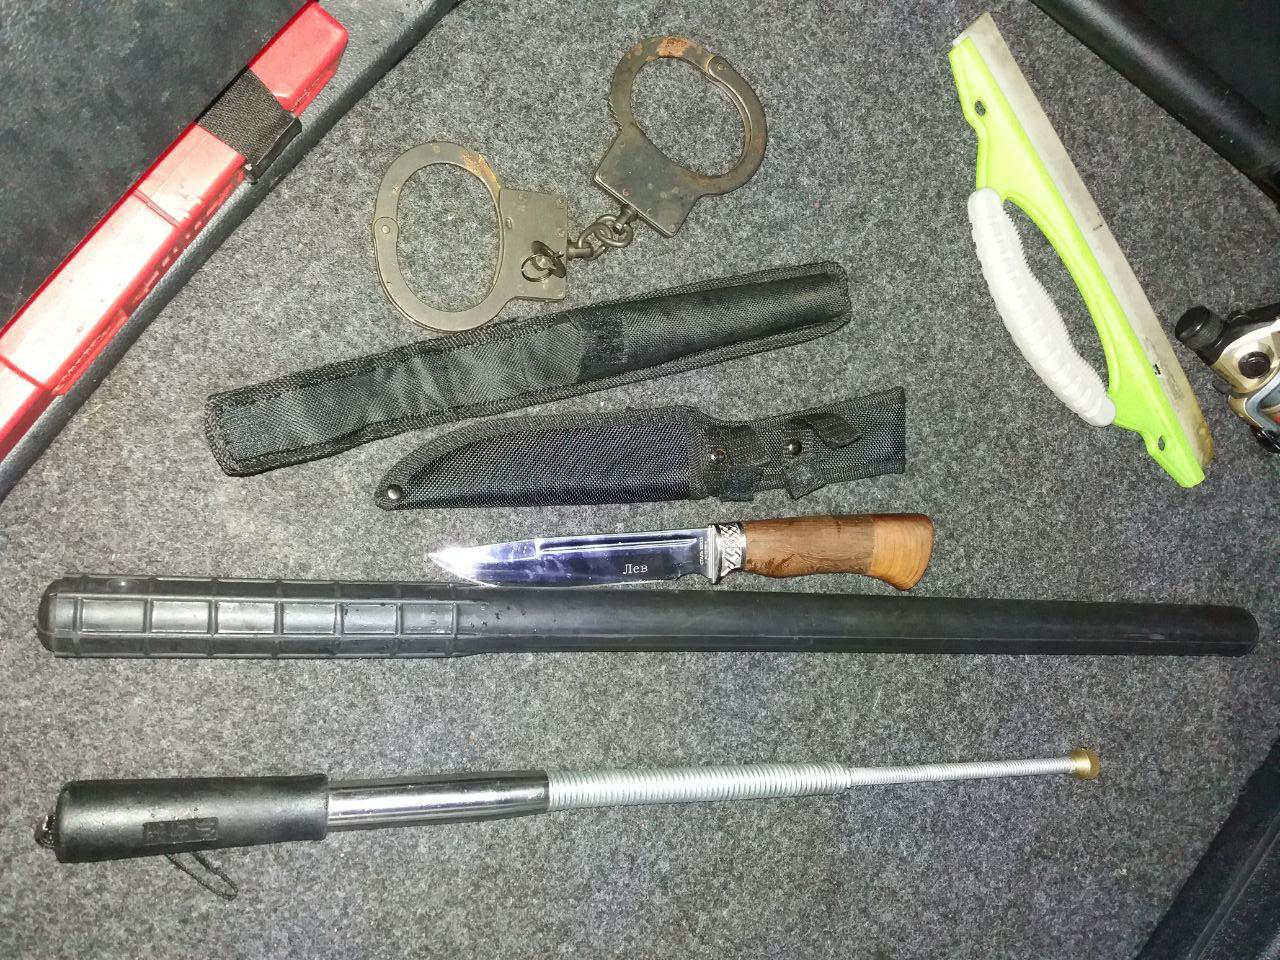 Ножі, кийки, кайданки і гвинтівка: на Волині в пунктах пропуску знайшли заборонені предмети (фото)